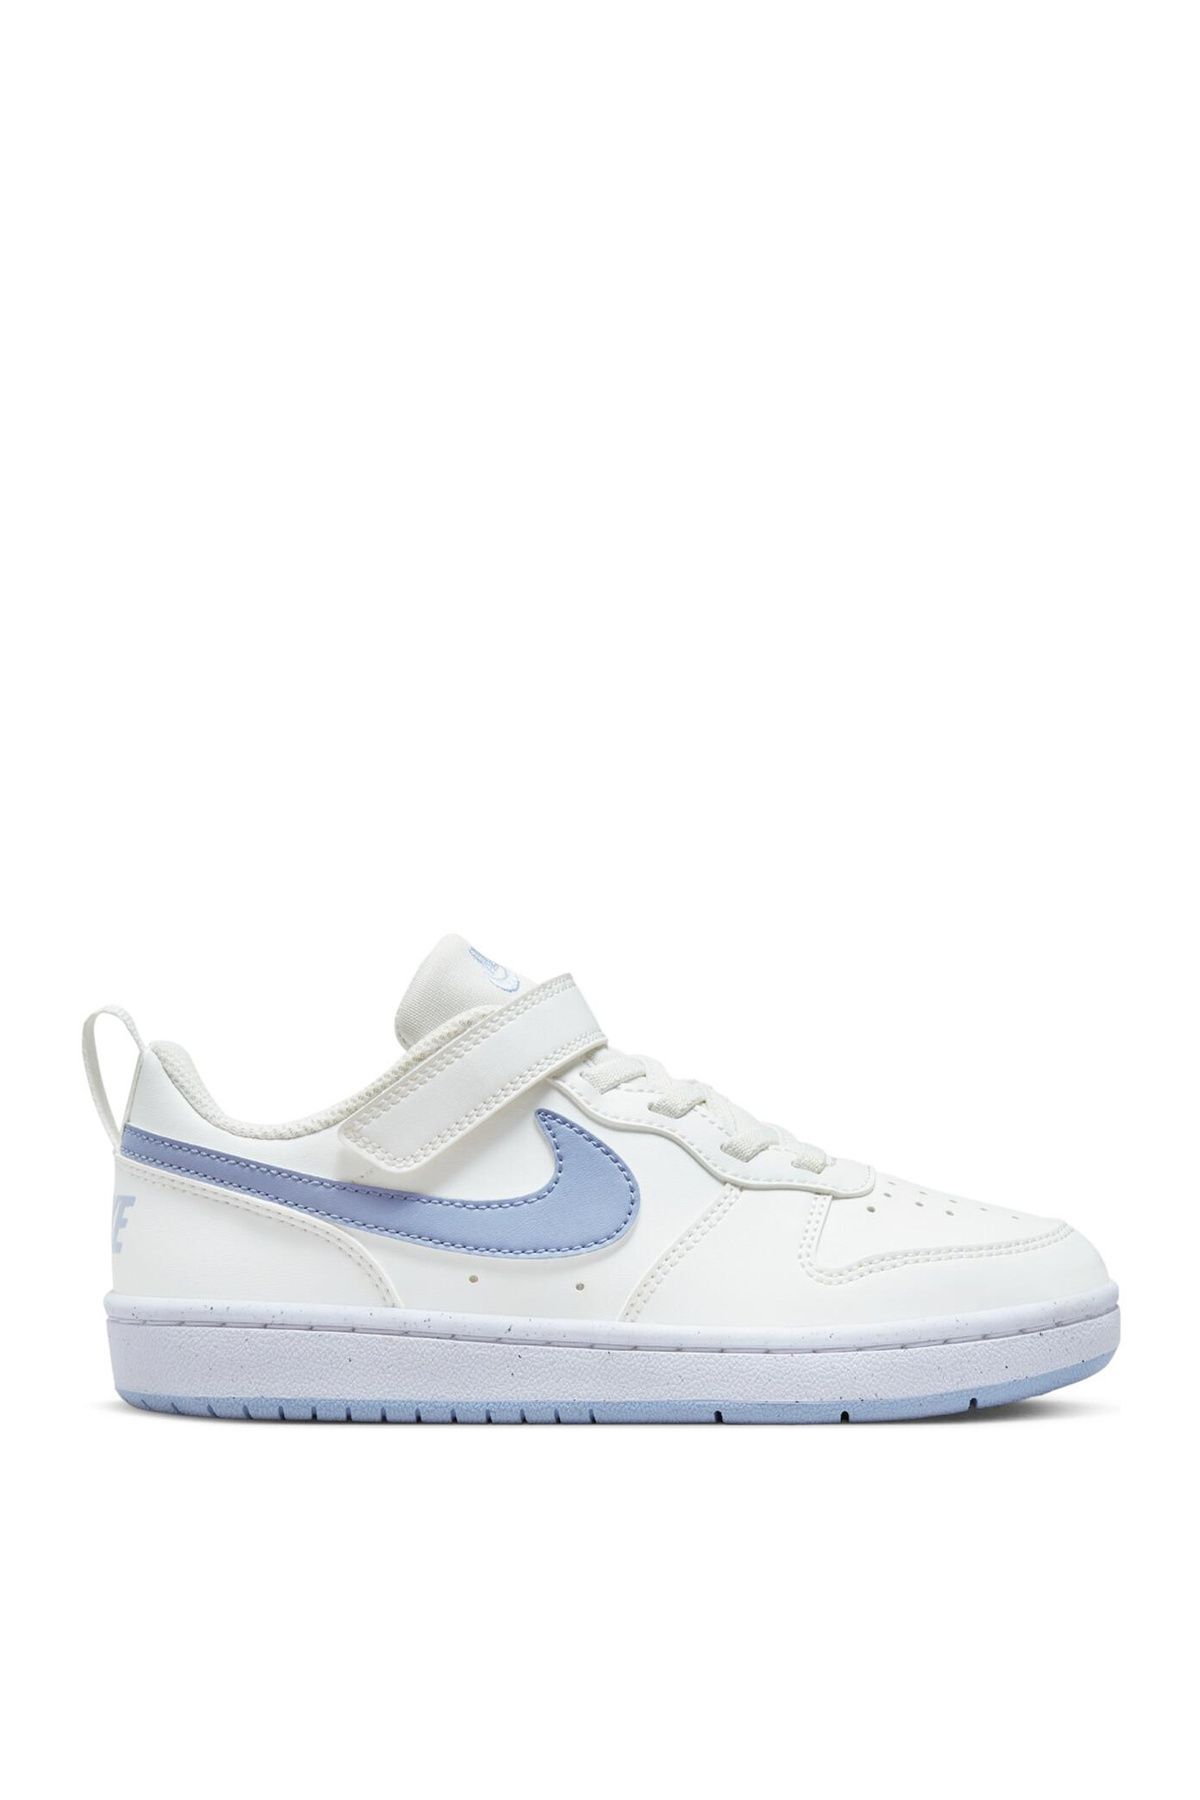 Nike Beyaz Kadın Yürüyüş Ayakkabısı DV5457-103 COURT BOROUGH LOW RCRFT